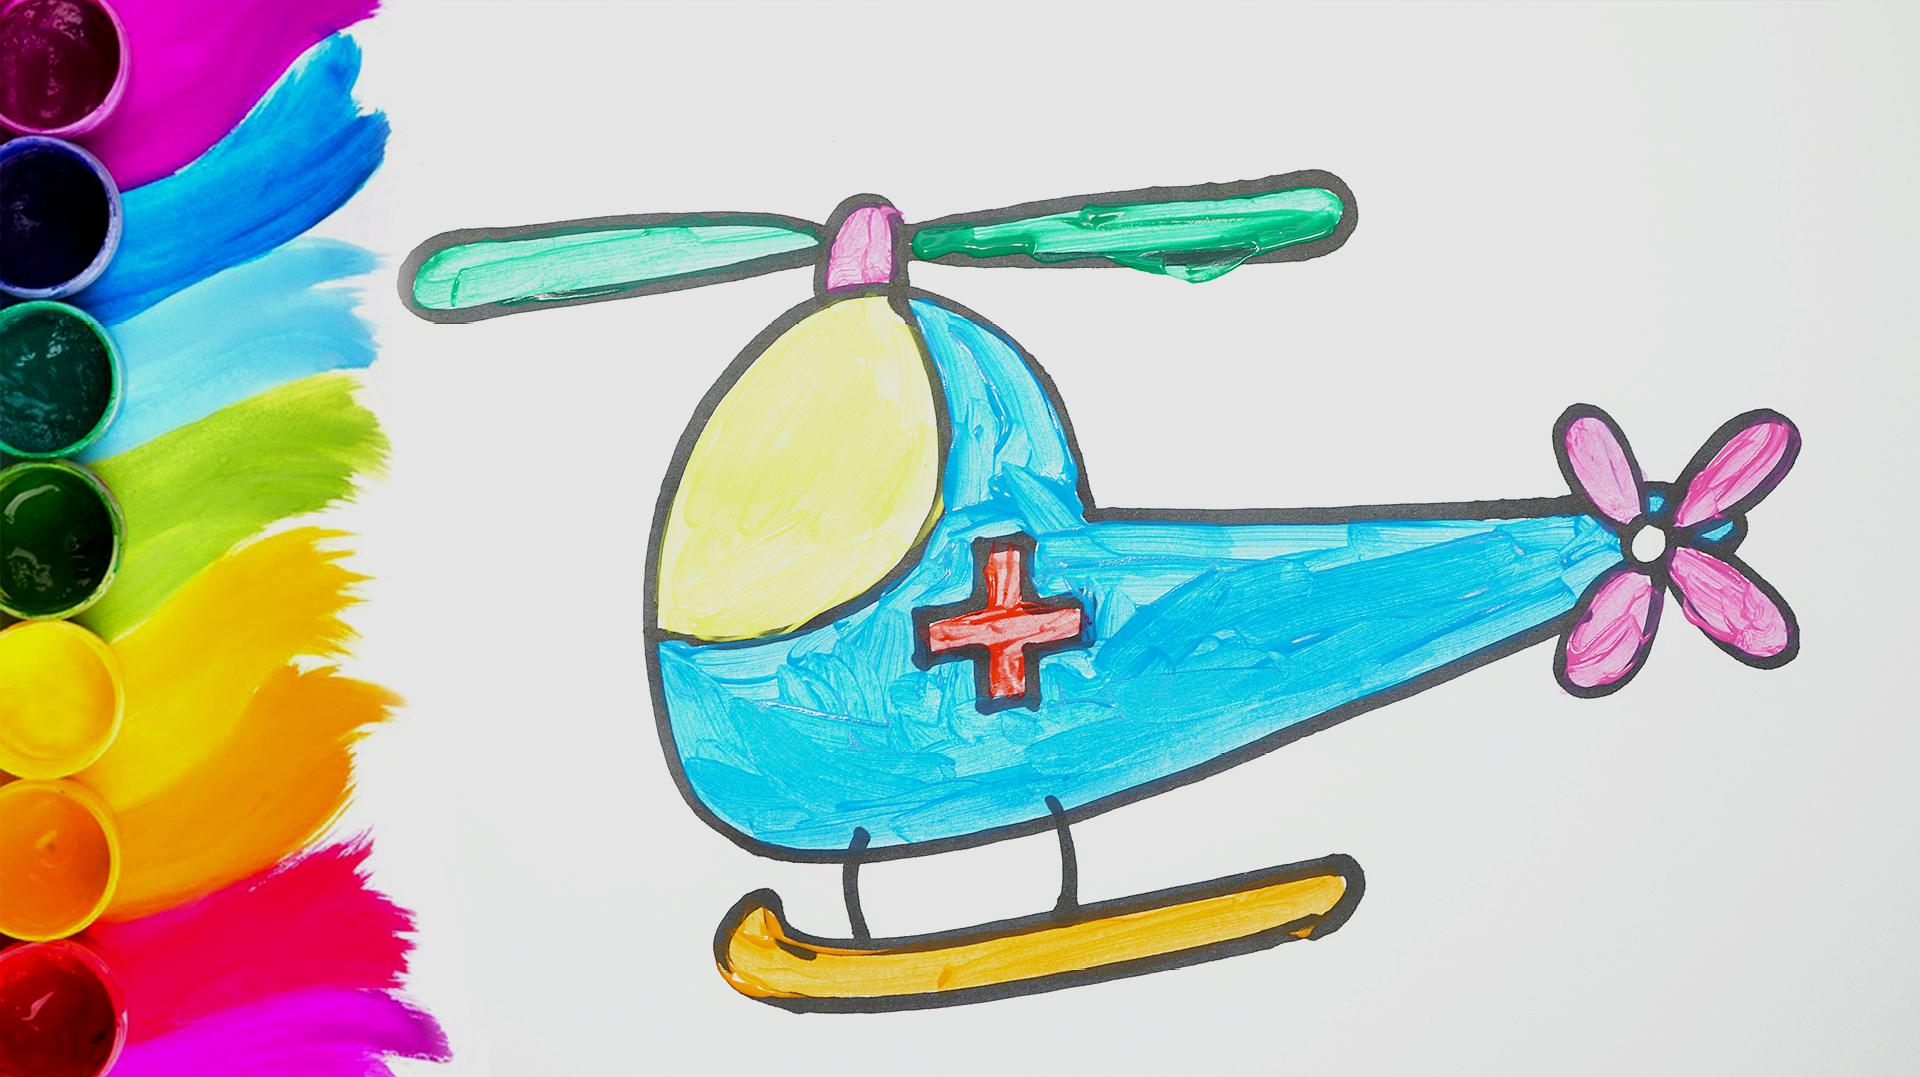 儿童简单漂亮涂鸦 漂亮简笔画直升机的画法图解 咿咿呀呀儿童手工网